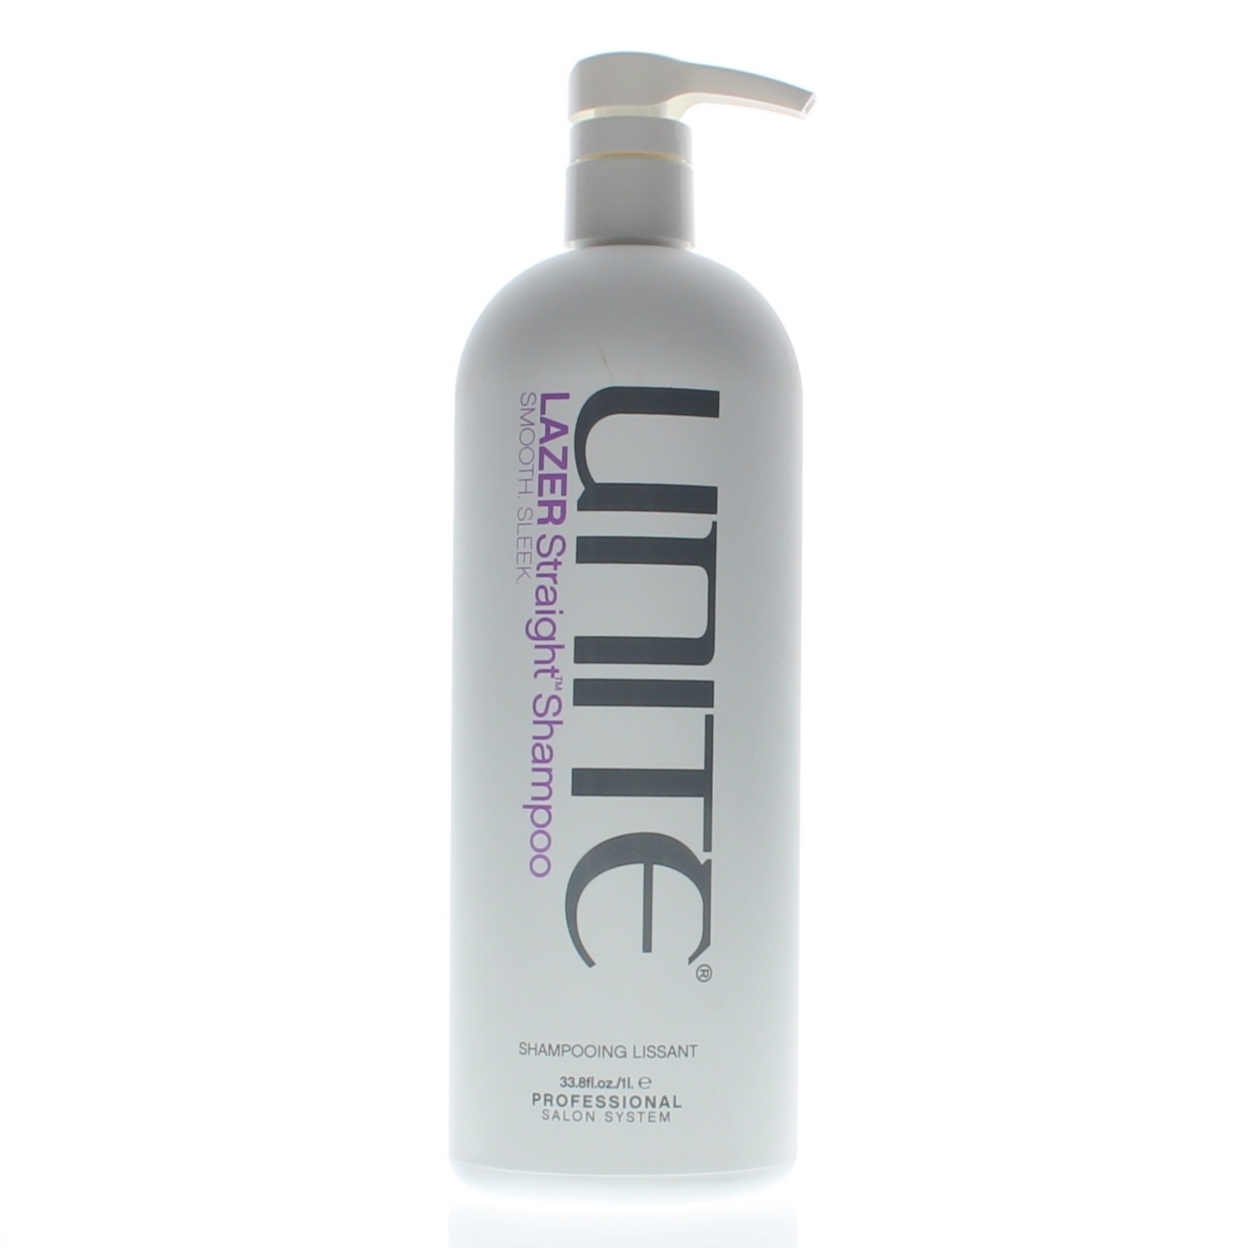 Unite Lazer Straight Shampoo 1 Liter/33.8oz